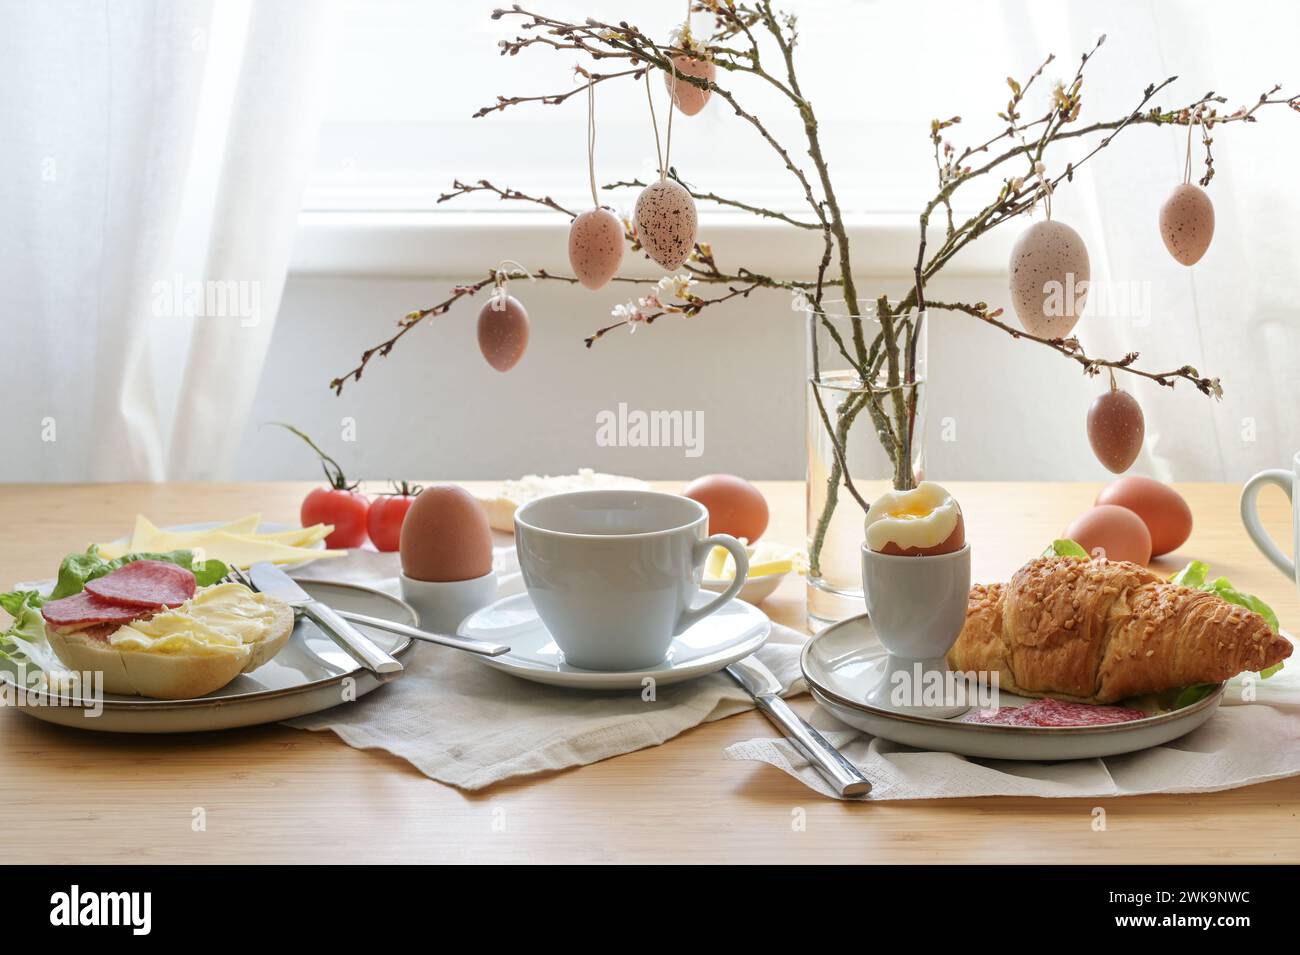 Osterfrühstück mit Ei, Brötchen, Kaffee, Croissant, Käse und Wurst, dekoriert mit Frühlingszweigen und hängenden ostereiern in einer Glasvase auf einem Tab Stockfoto